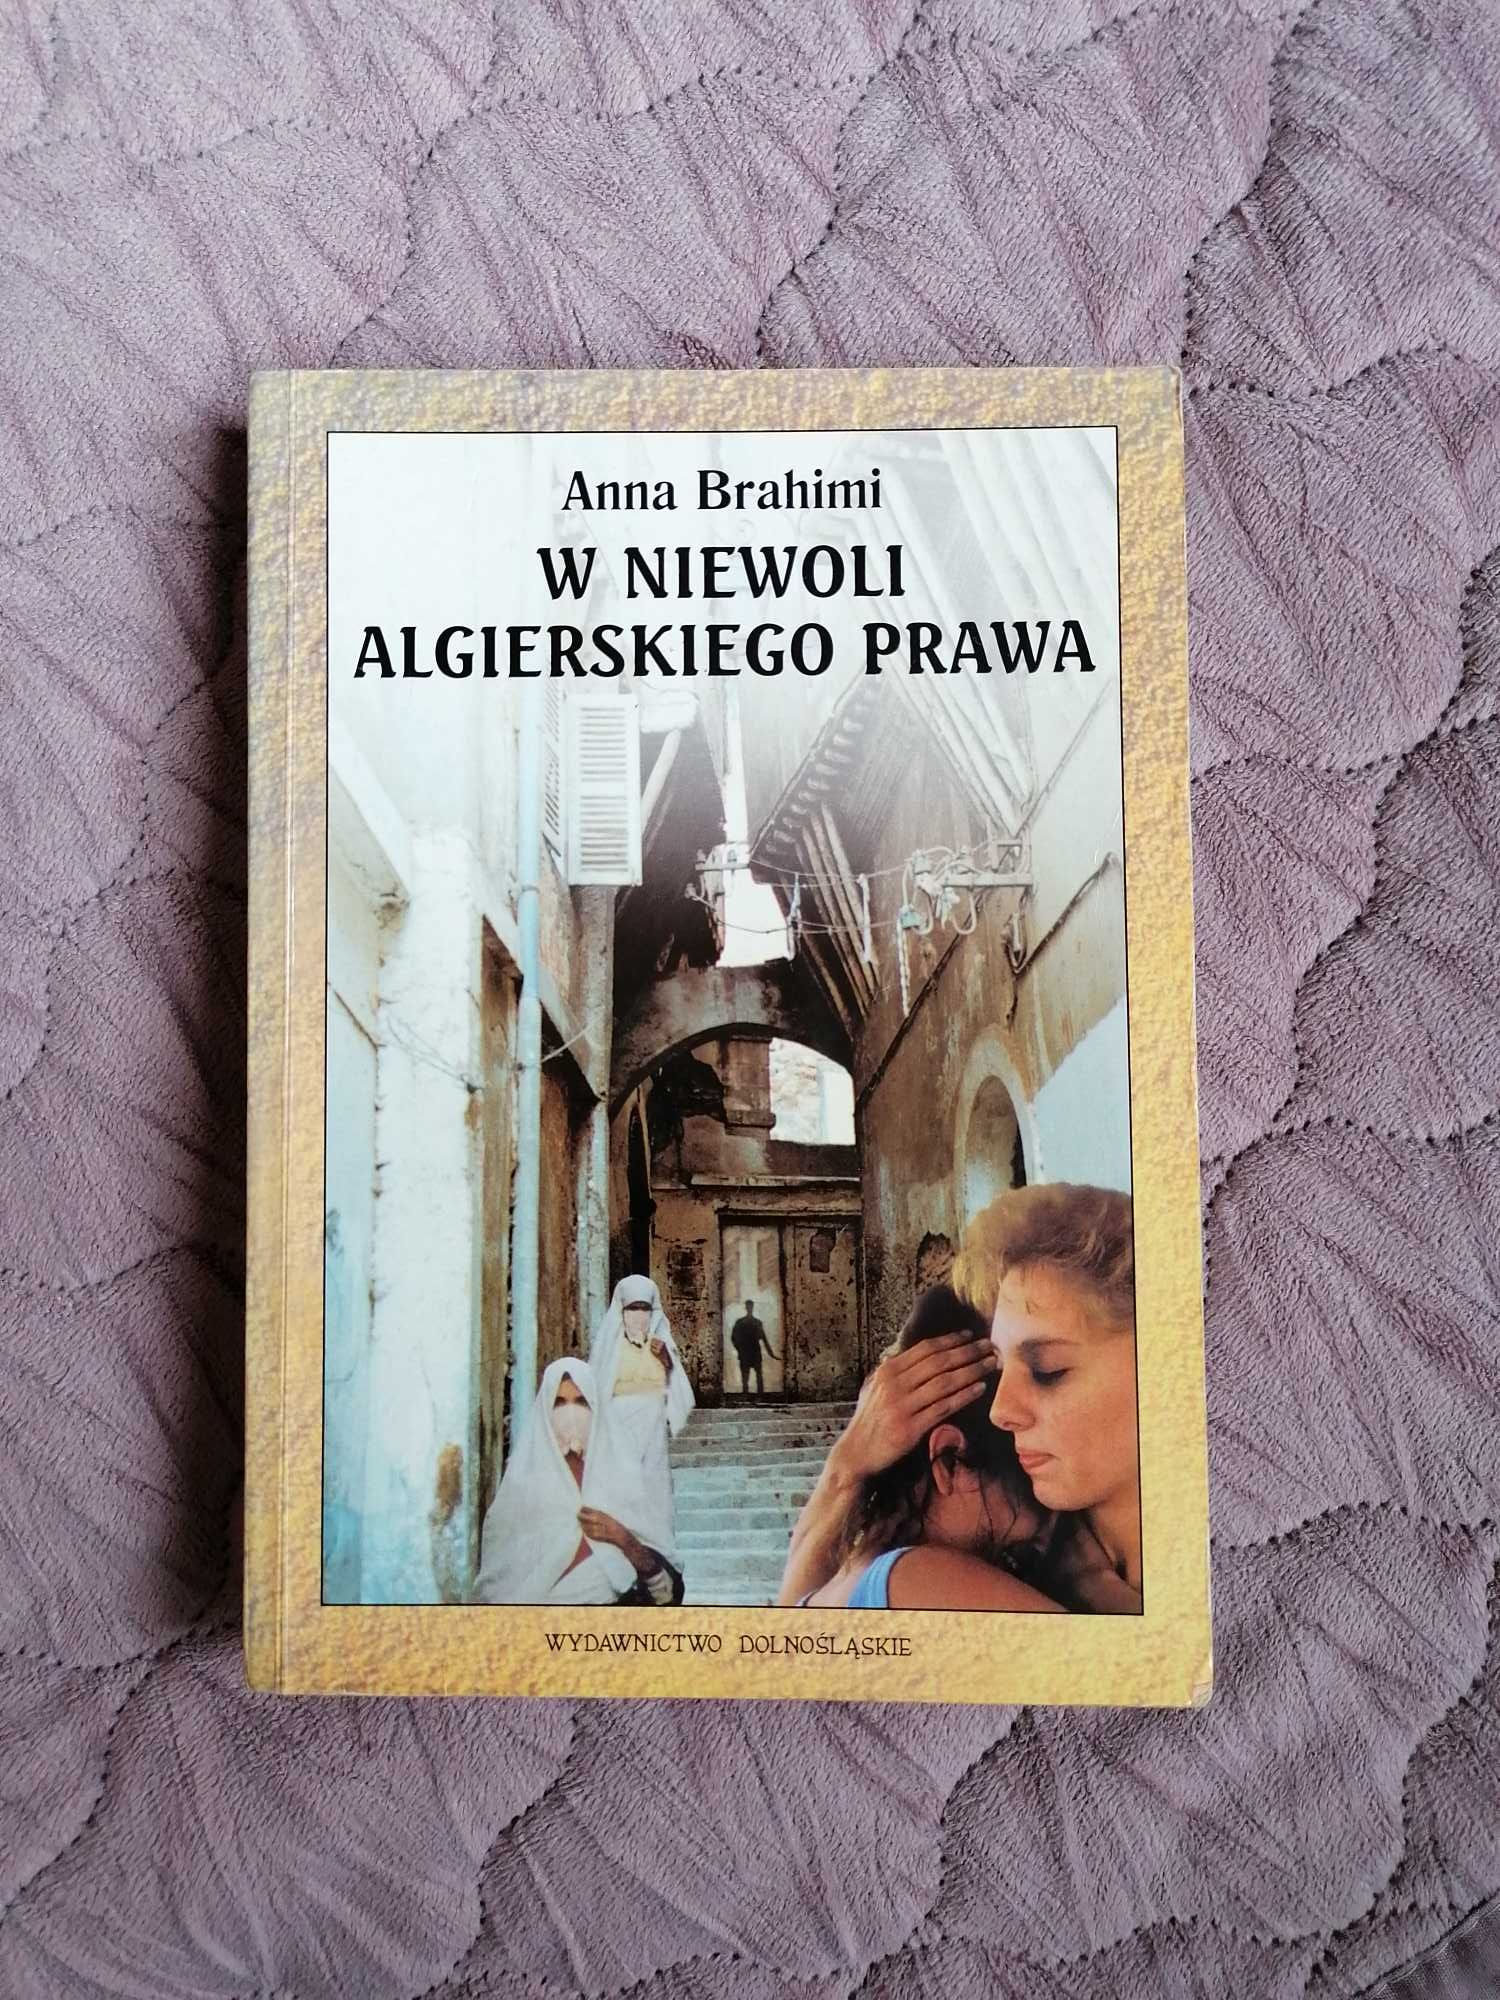 książka Anna Brahimi „W niewoli algierskiego prawa”